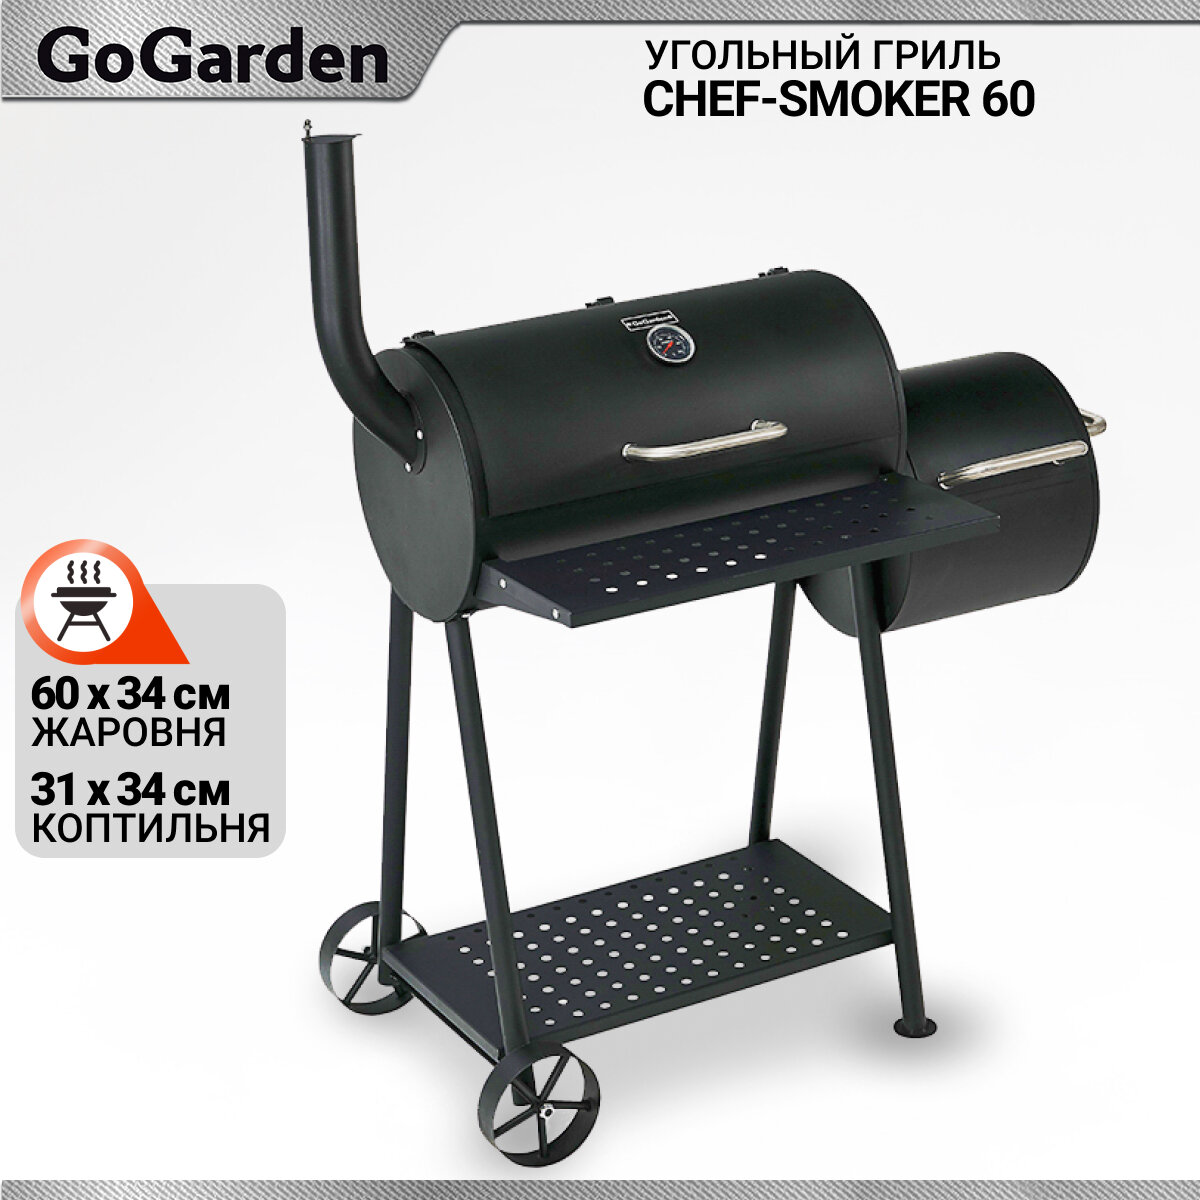 Угольный гриль-бочка с коптильней Go Garden CHEF-Smoker 60